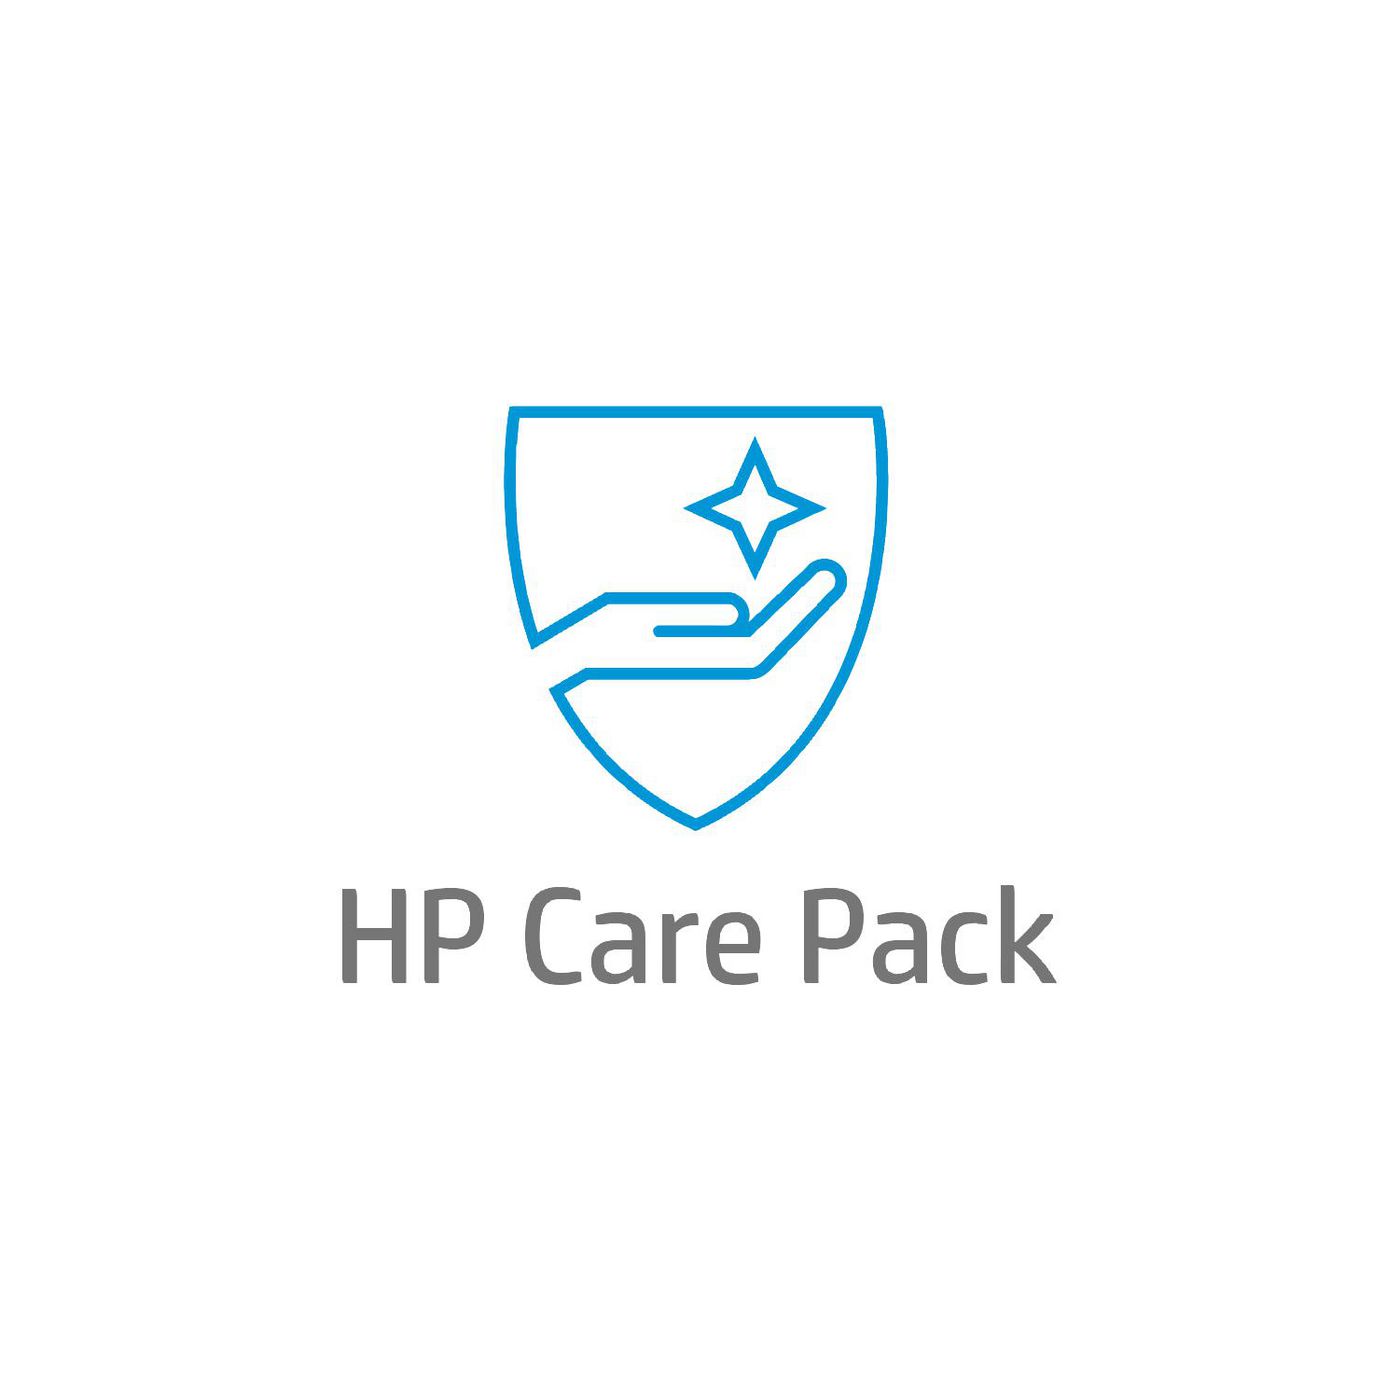 HP Care Pack Next Business Day Hardware Support - Serviceerweiterung - 3 Jahre - Vor-Ort